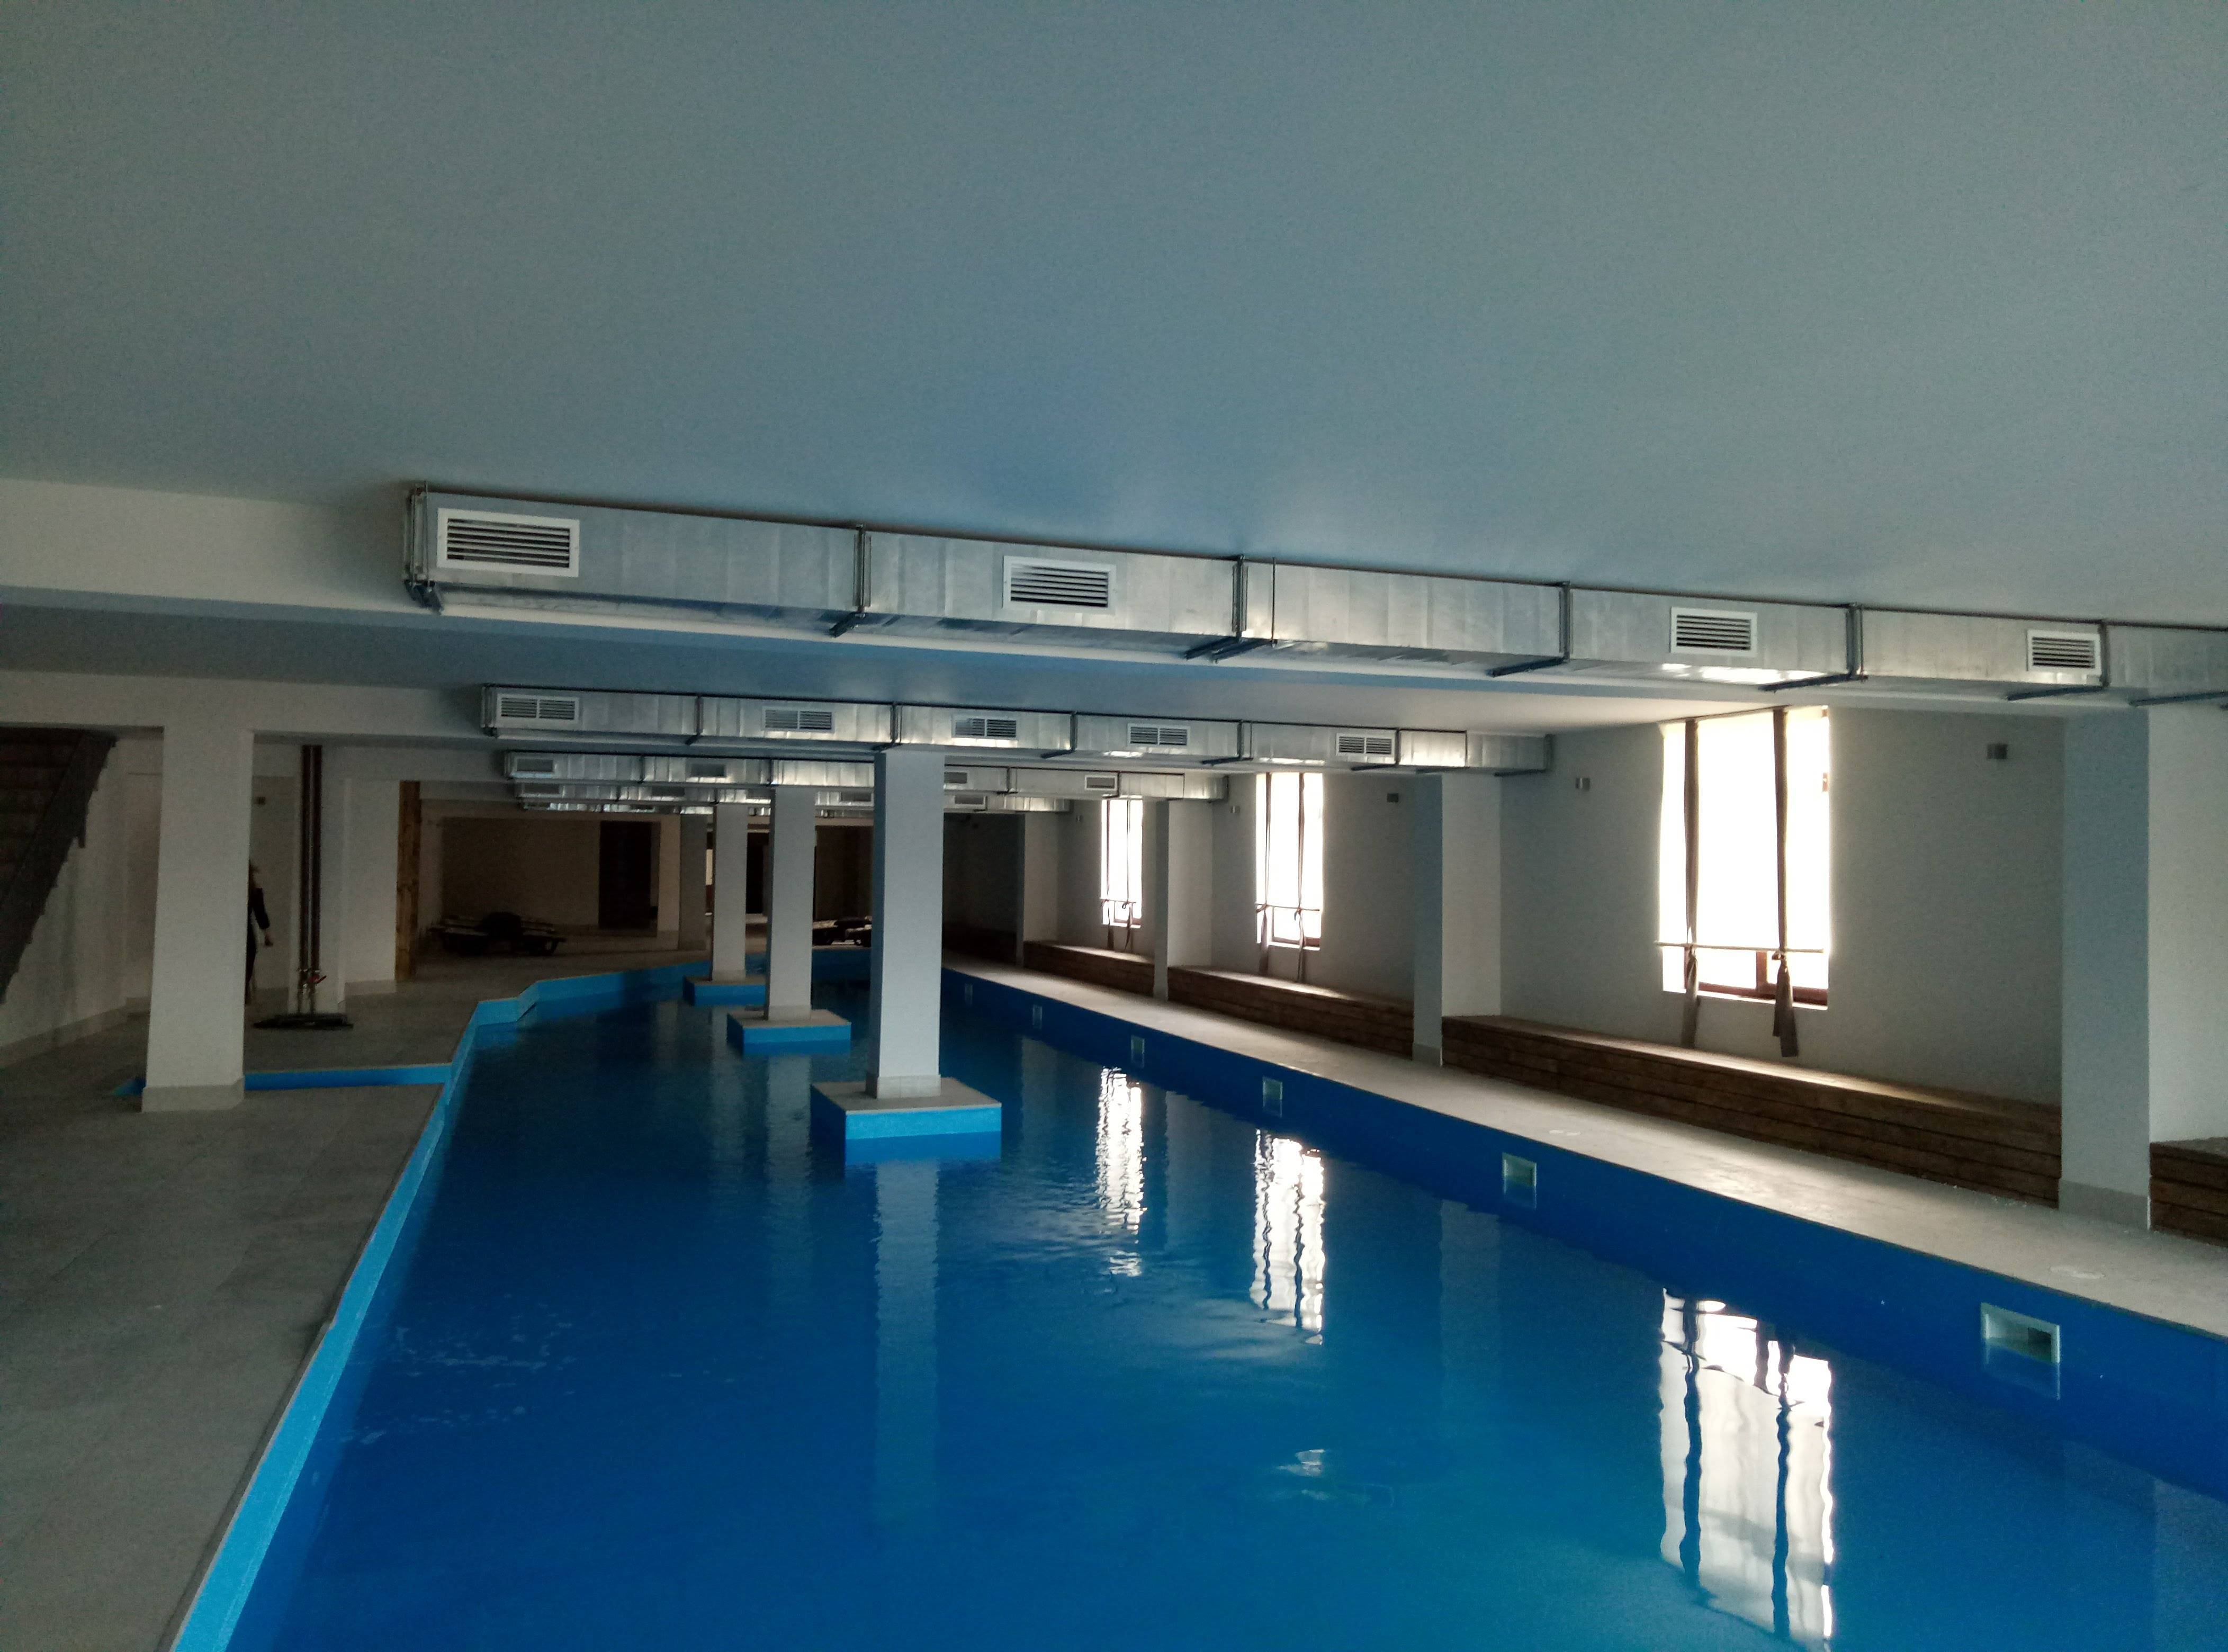 Вентиляция для бассейна: особенности устройства в помещениях